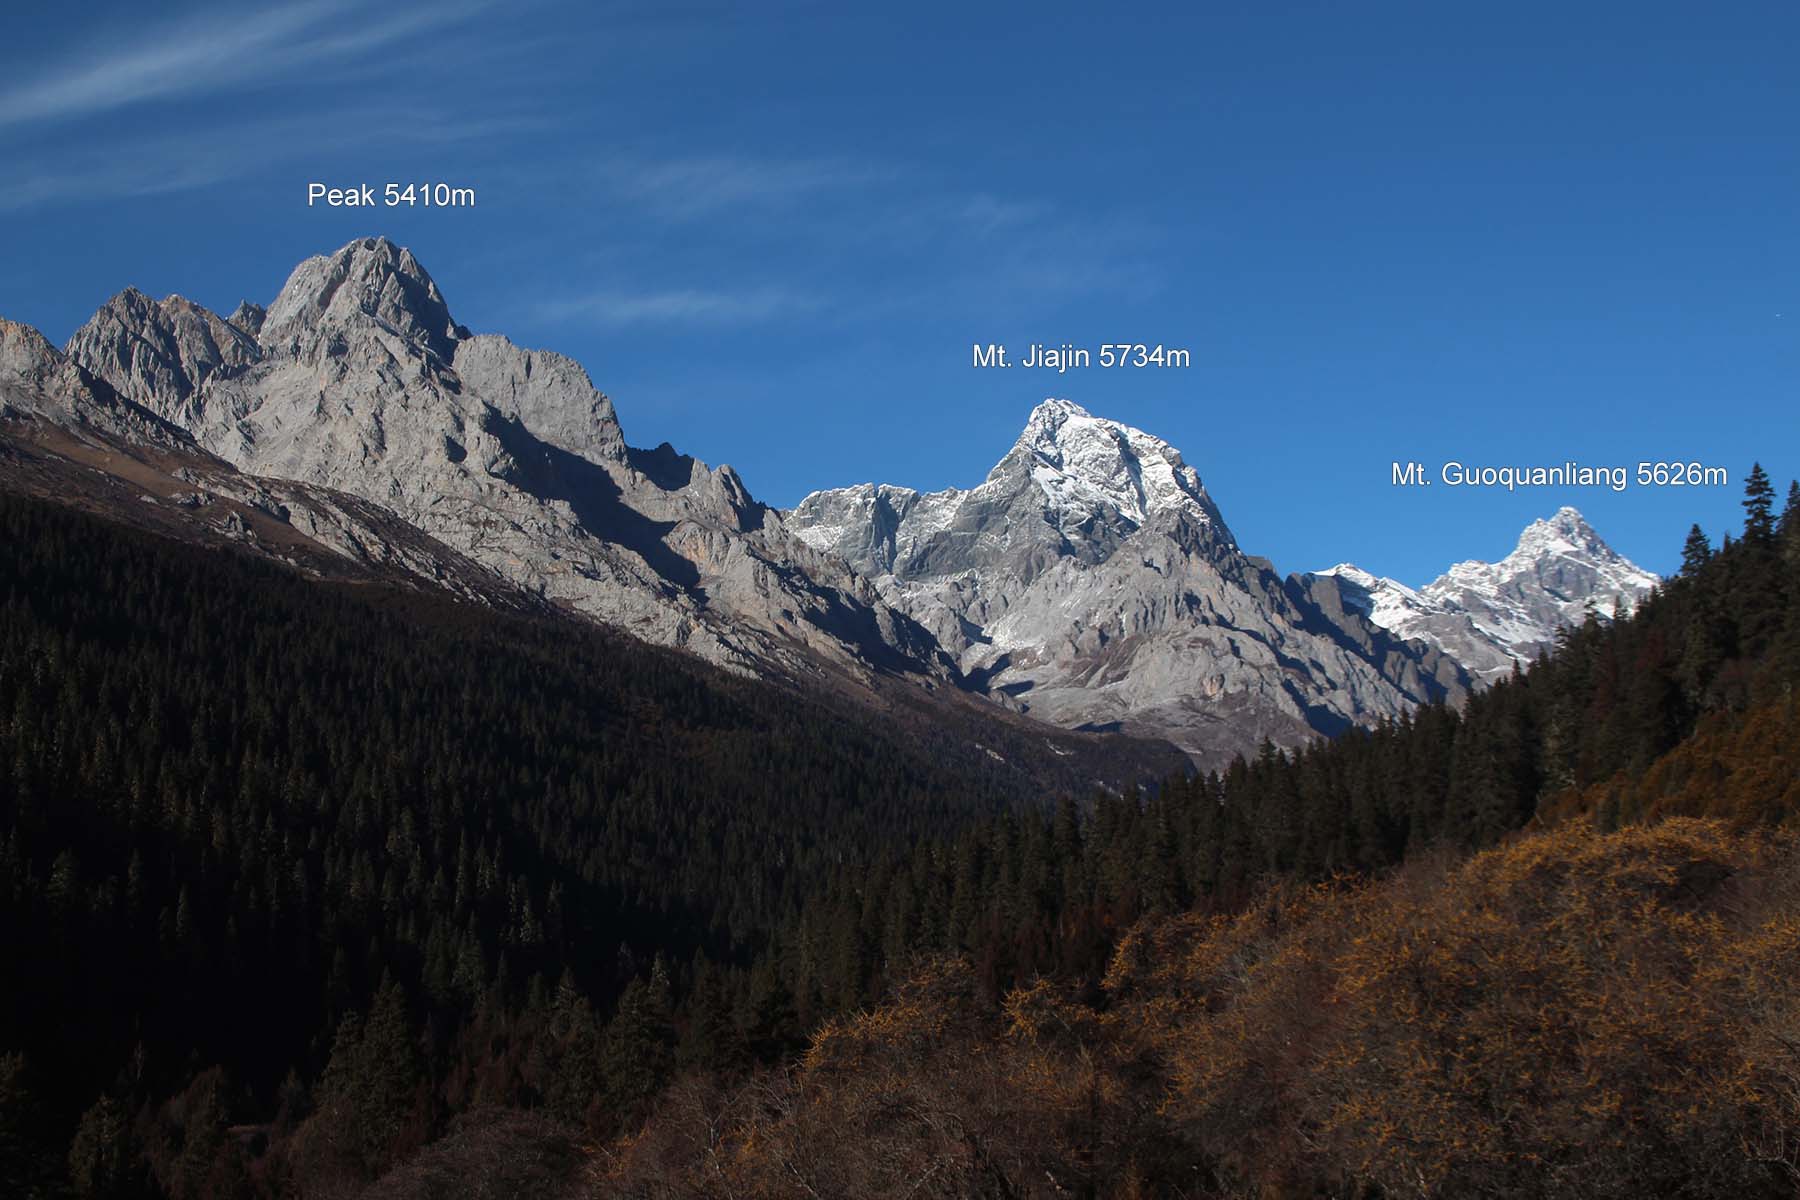 Jiajin Main Peaks